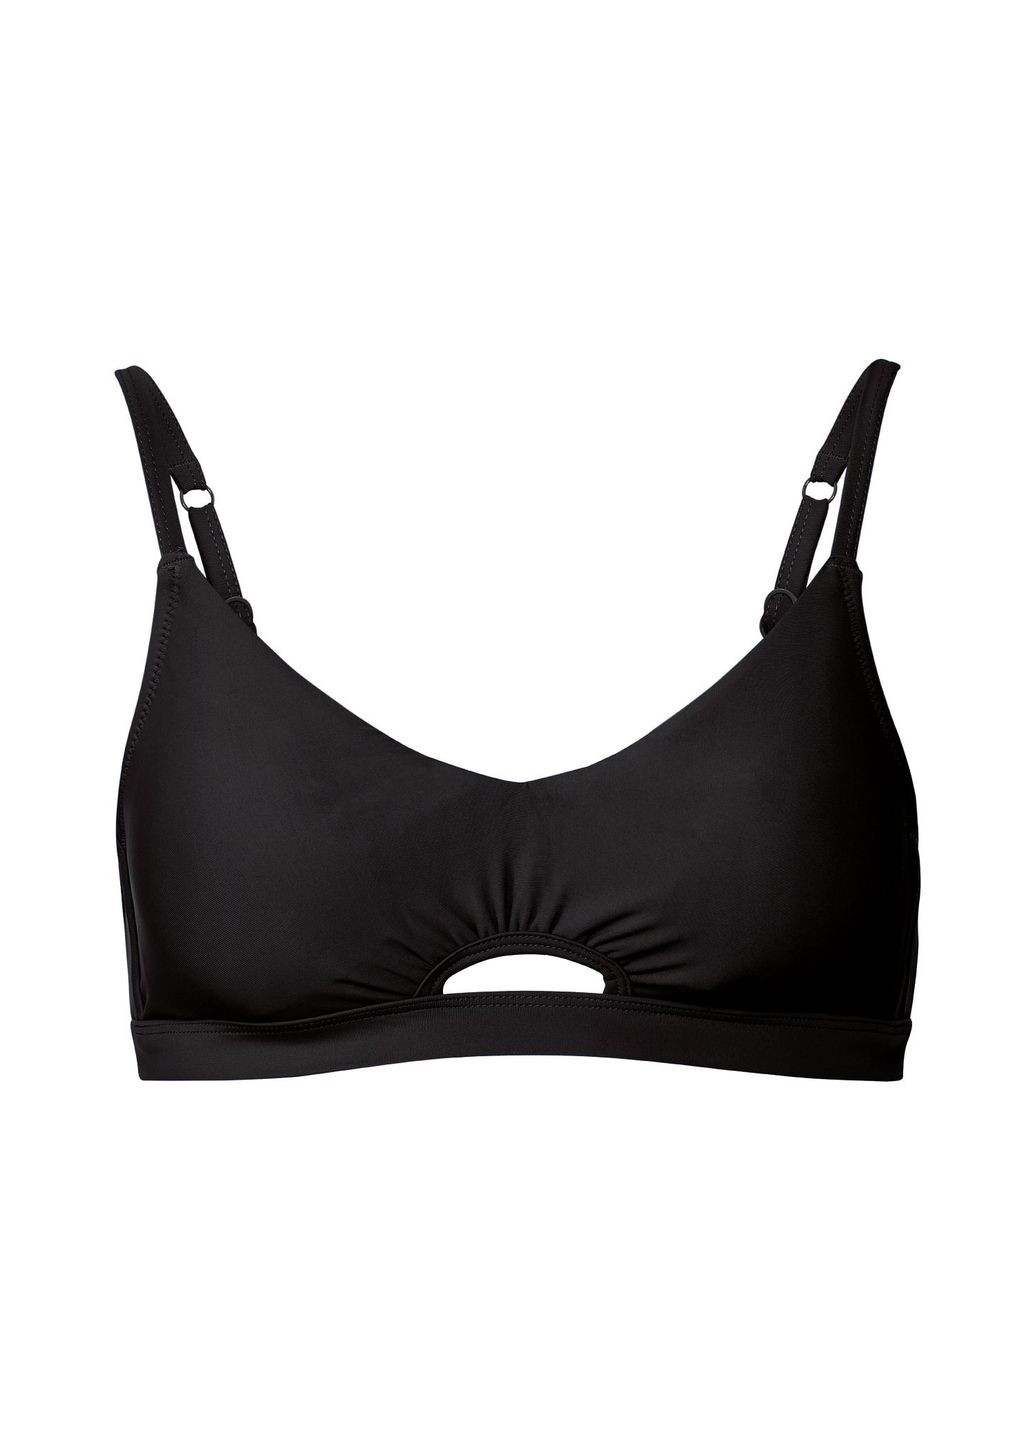 Черный купальник раздельный на завязках для женщины lycra® 325844 бикини Esmara С открытой спиной, С открытыми плечами